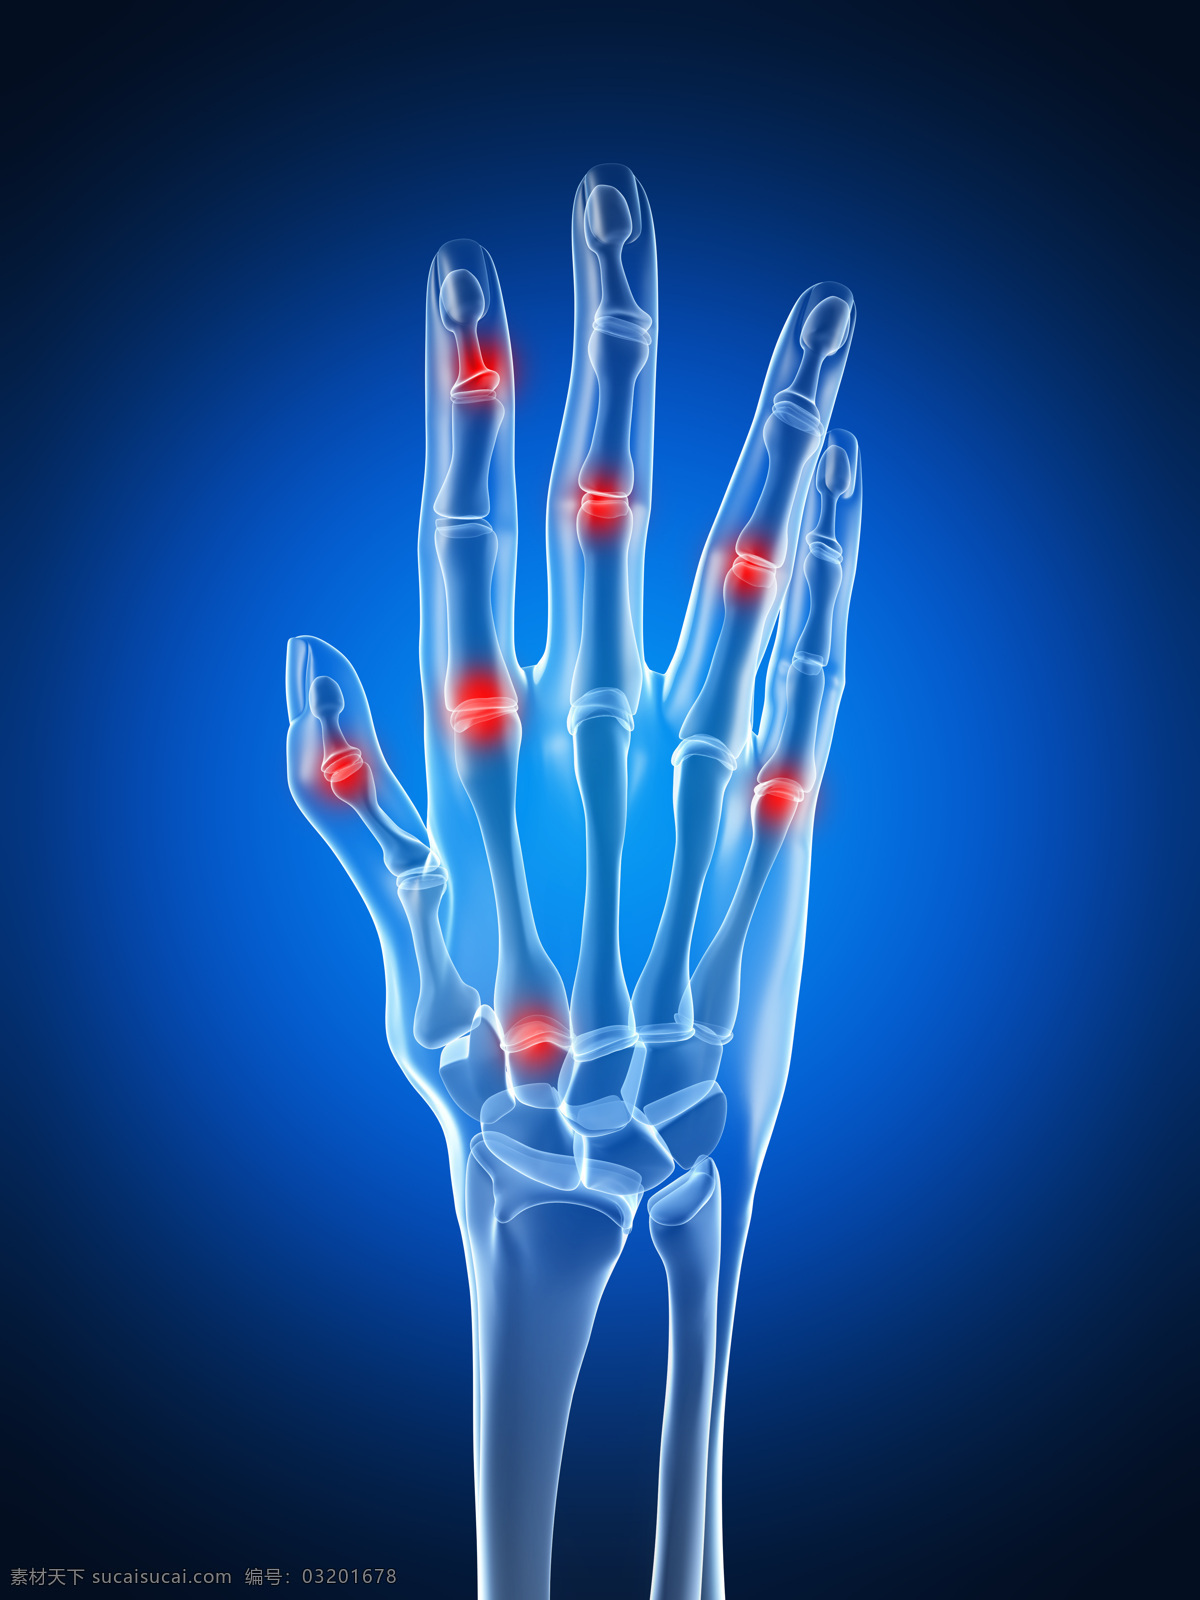 手指 关节 疼痛 手指关节疼痛 手指关节 关节疼 关节痛 关节炎 人体关节 骨骼 人体器官图 医疗护理 现代科技